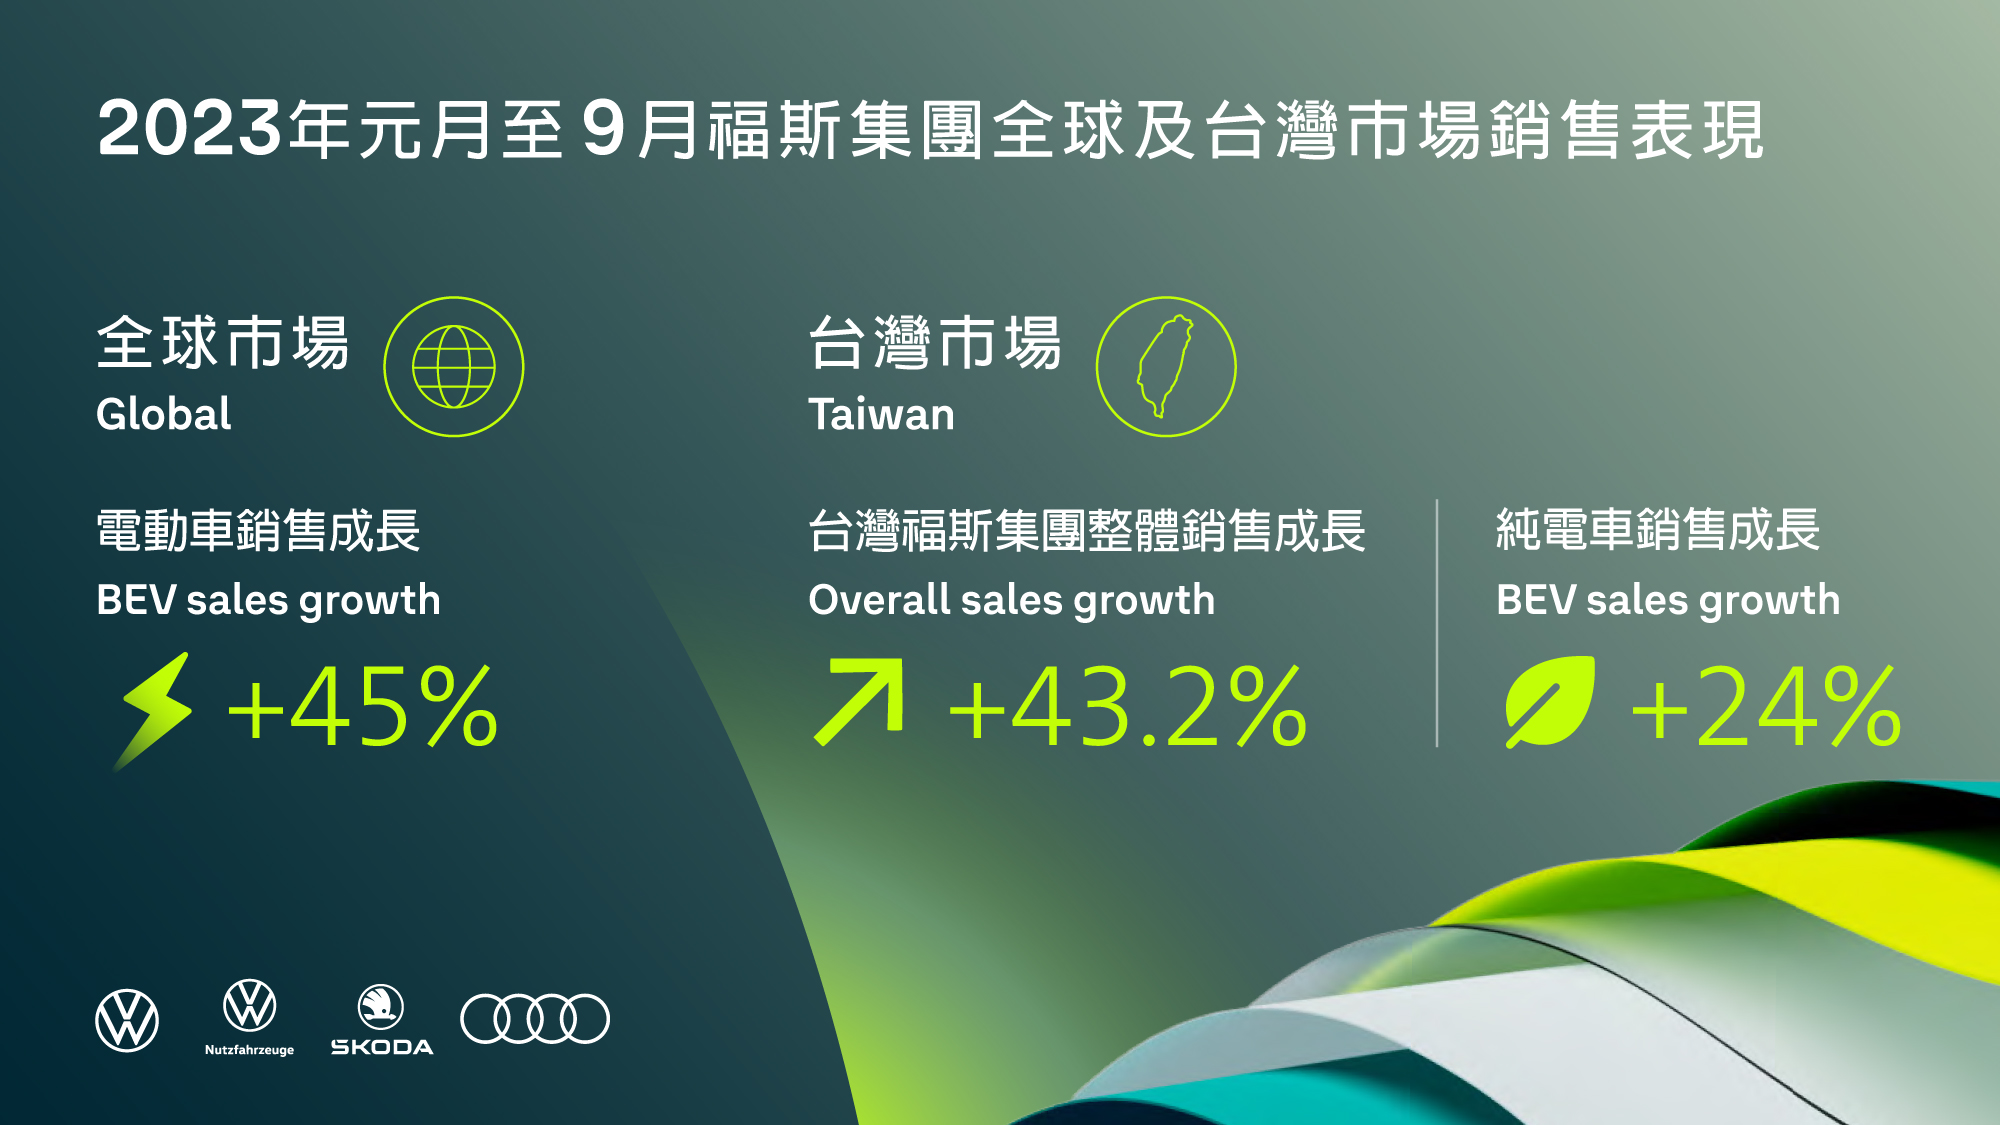 福斯集團2023年前三季全球電動車銷量增長45% 台灣福斯集團多元車款陣容 元月至9月銷售較去年同期成長43.2%